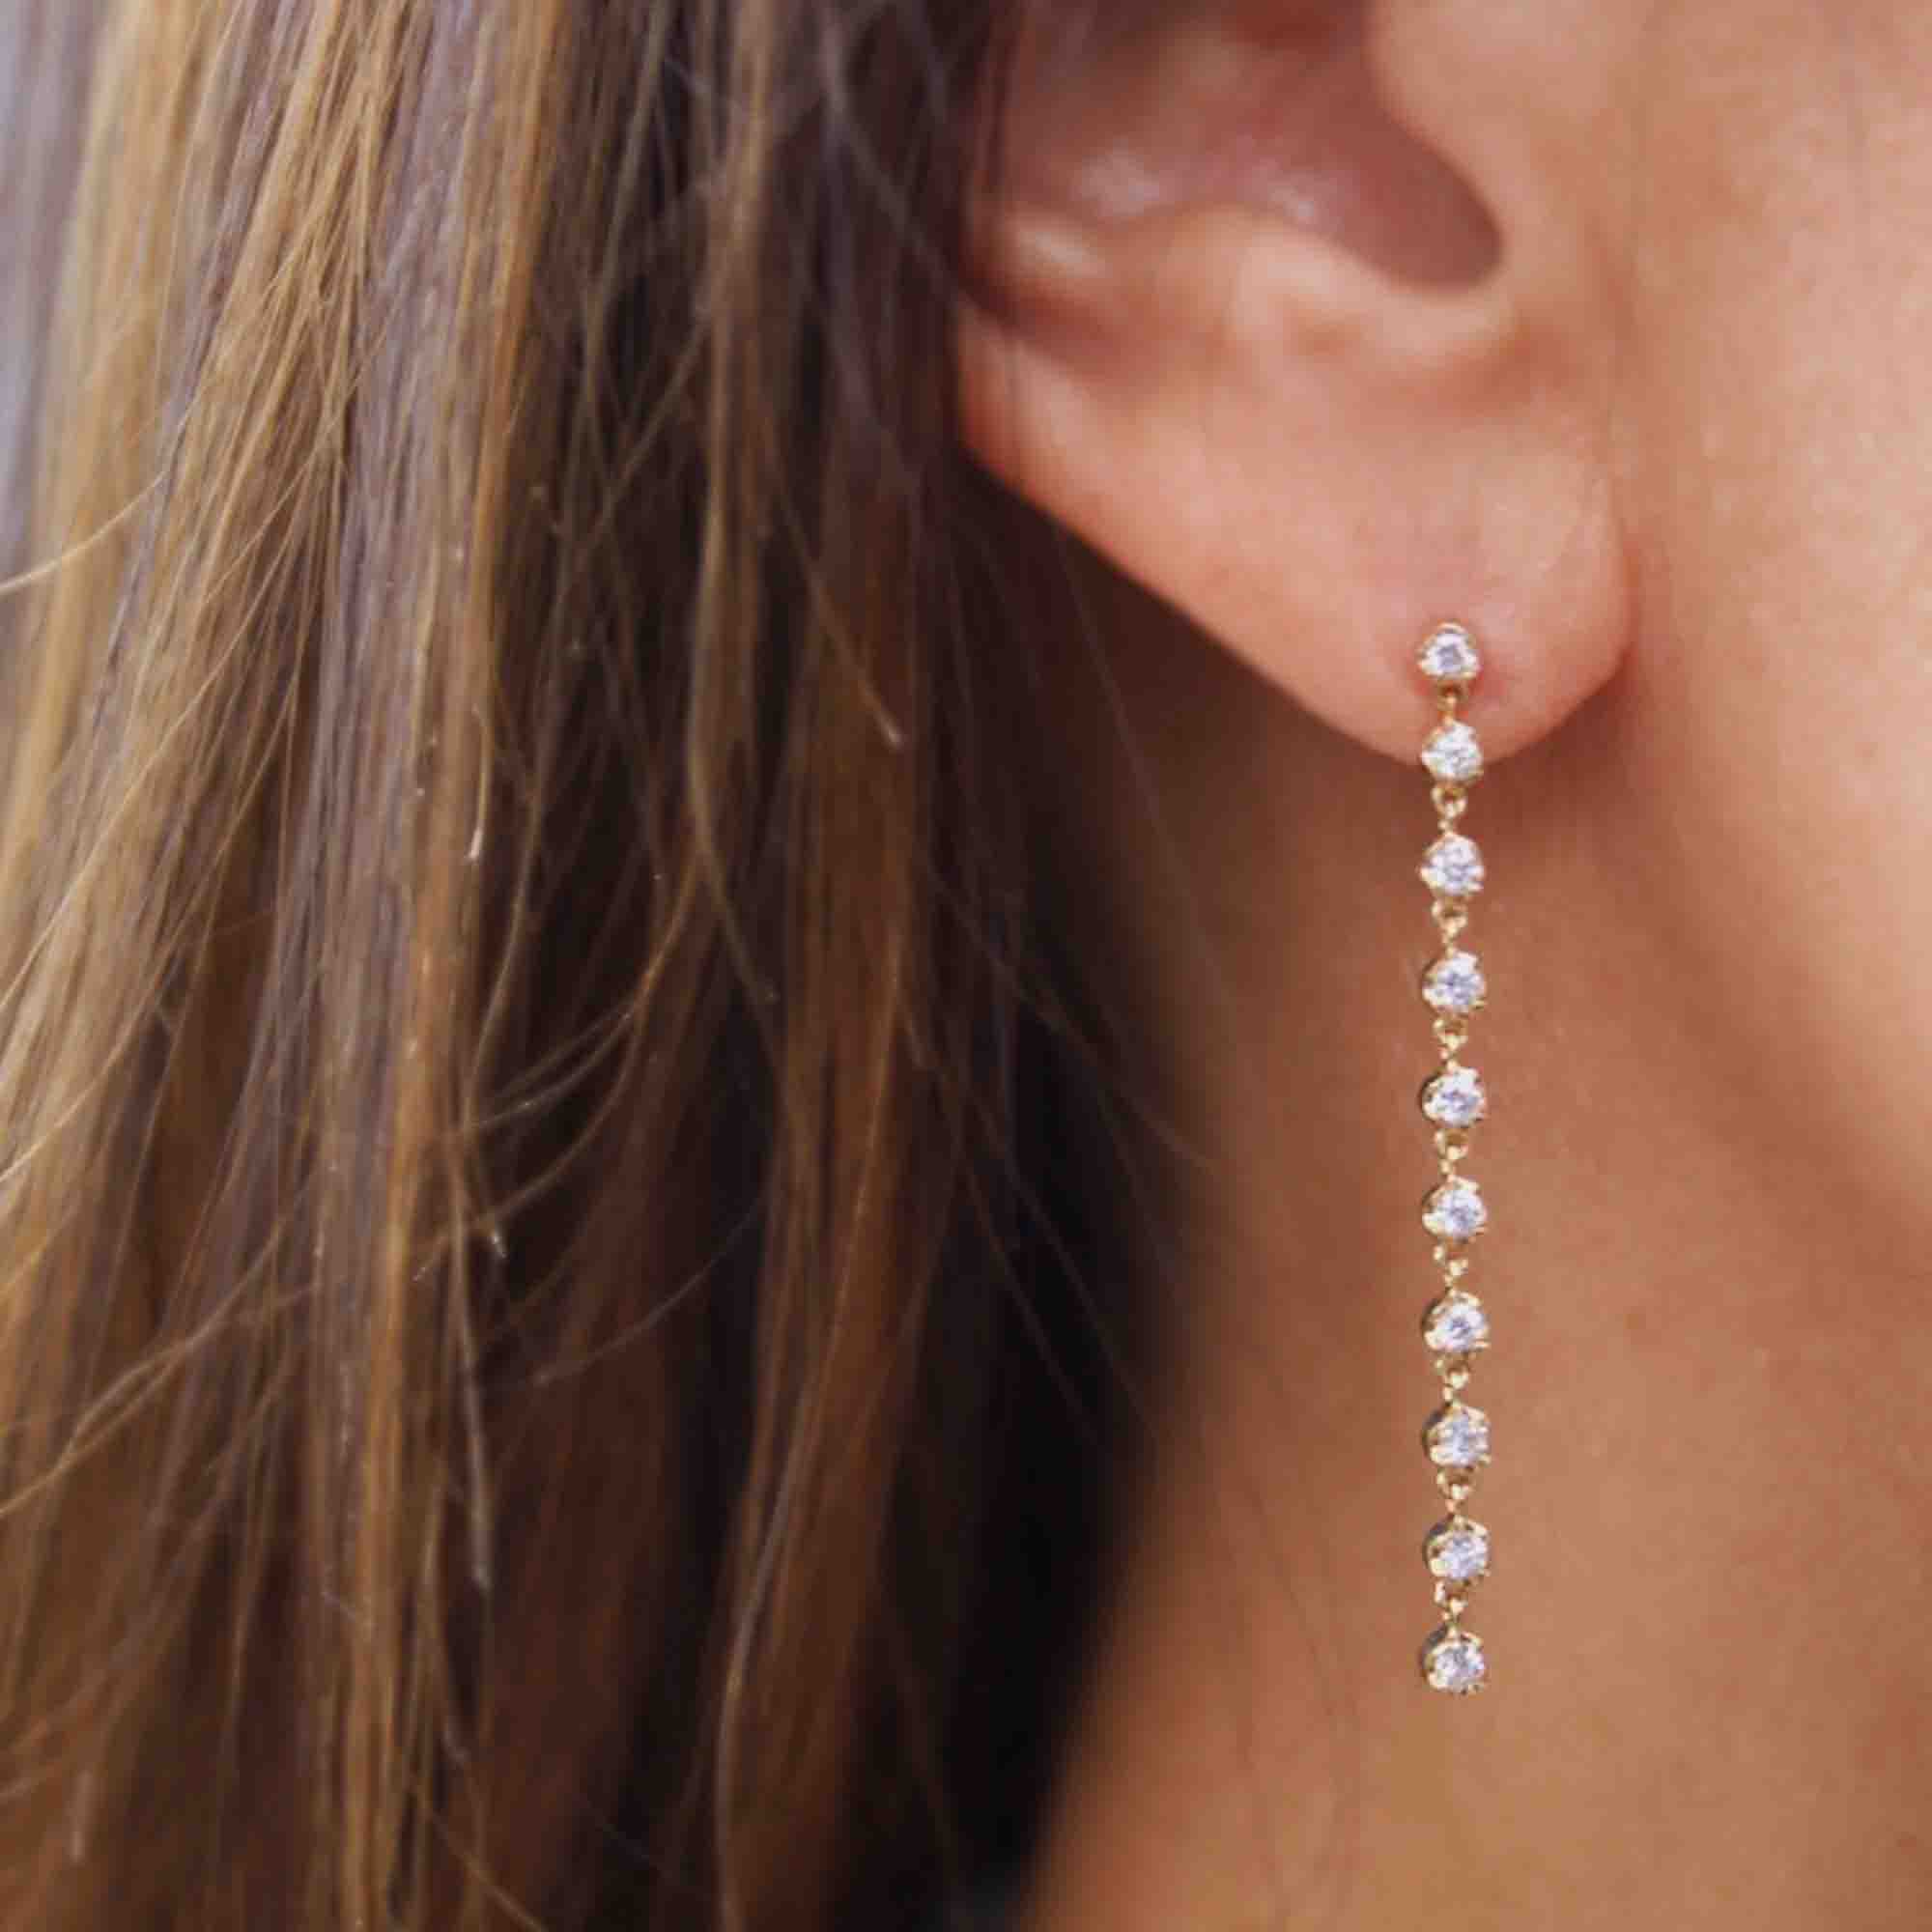 10 Drop Diamond Reagan Earrings